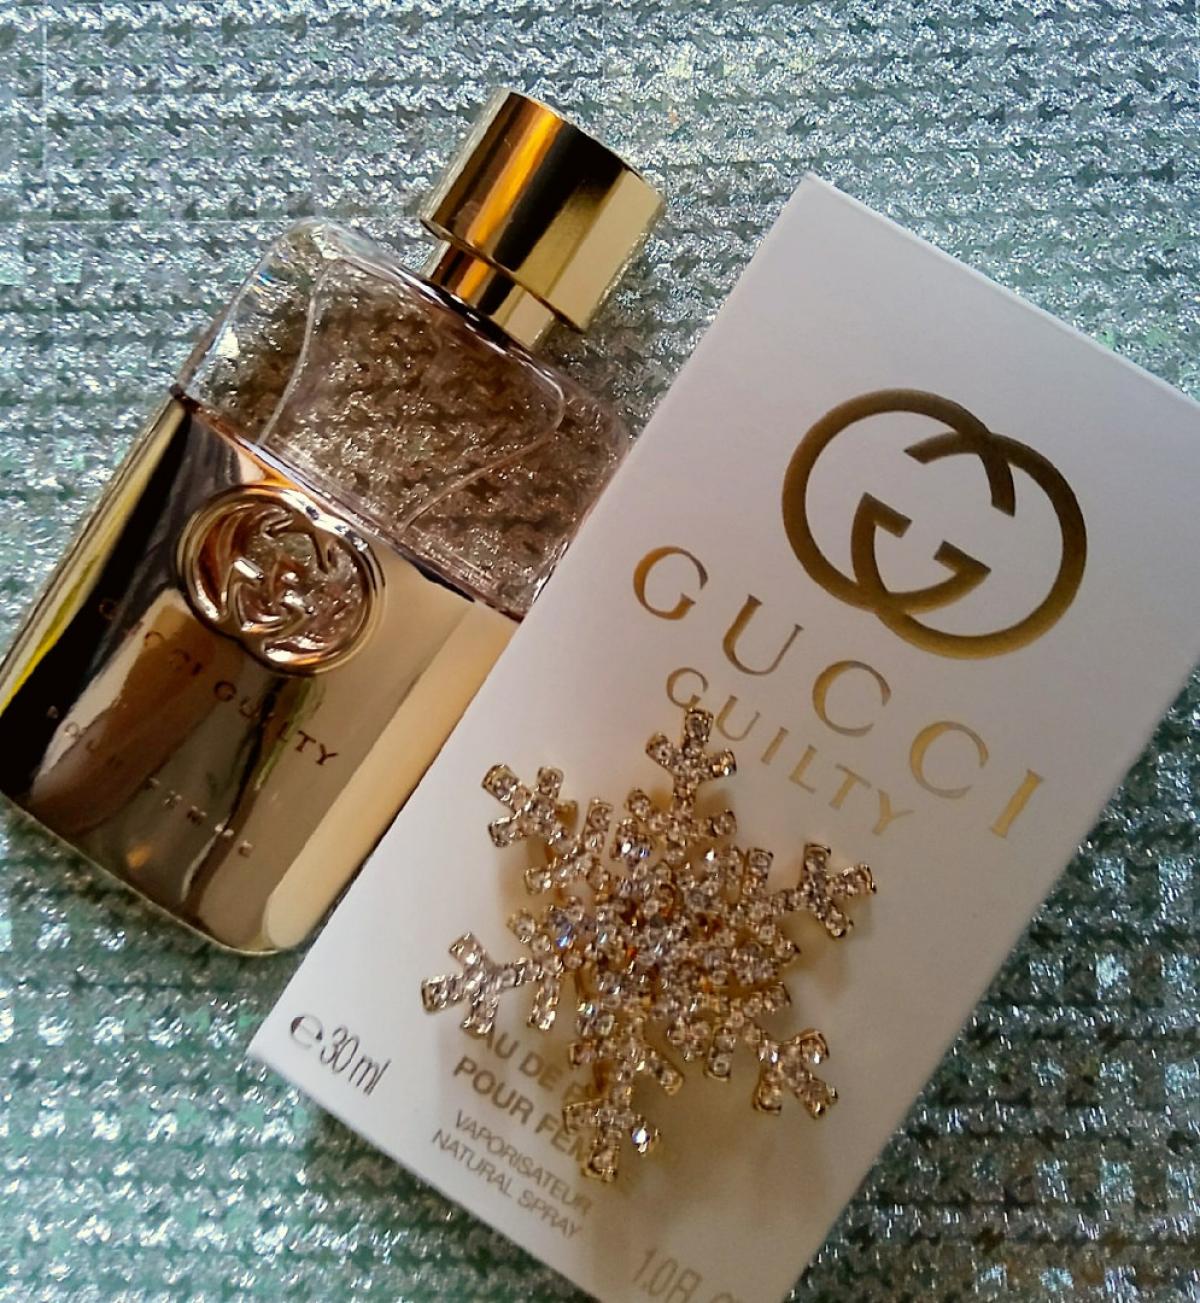 Gucci Guilty Eau de Parfum Gucci parfum - een nieuwe geur voor dames 2019